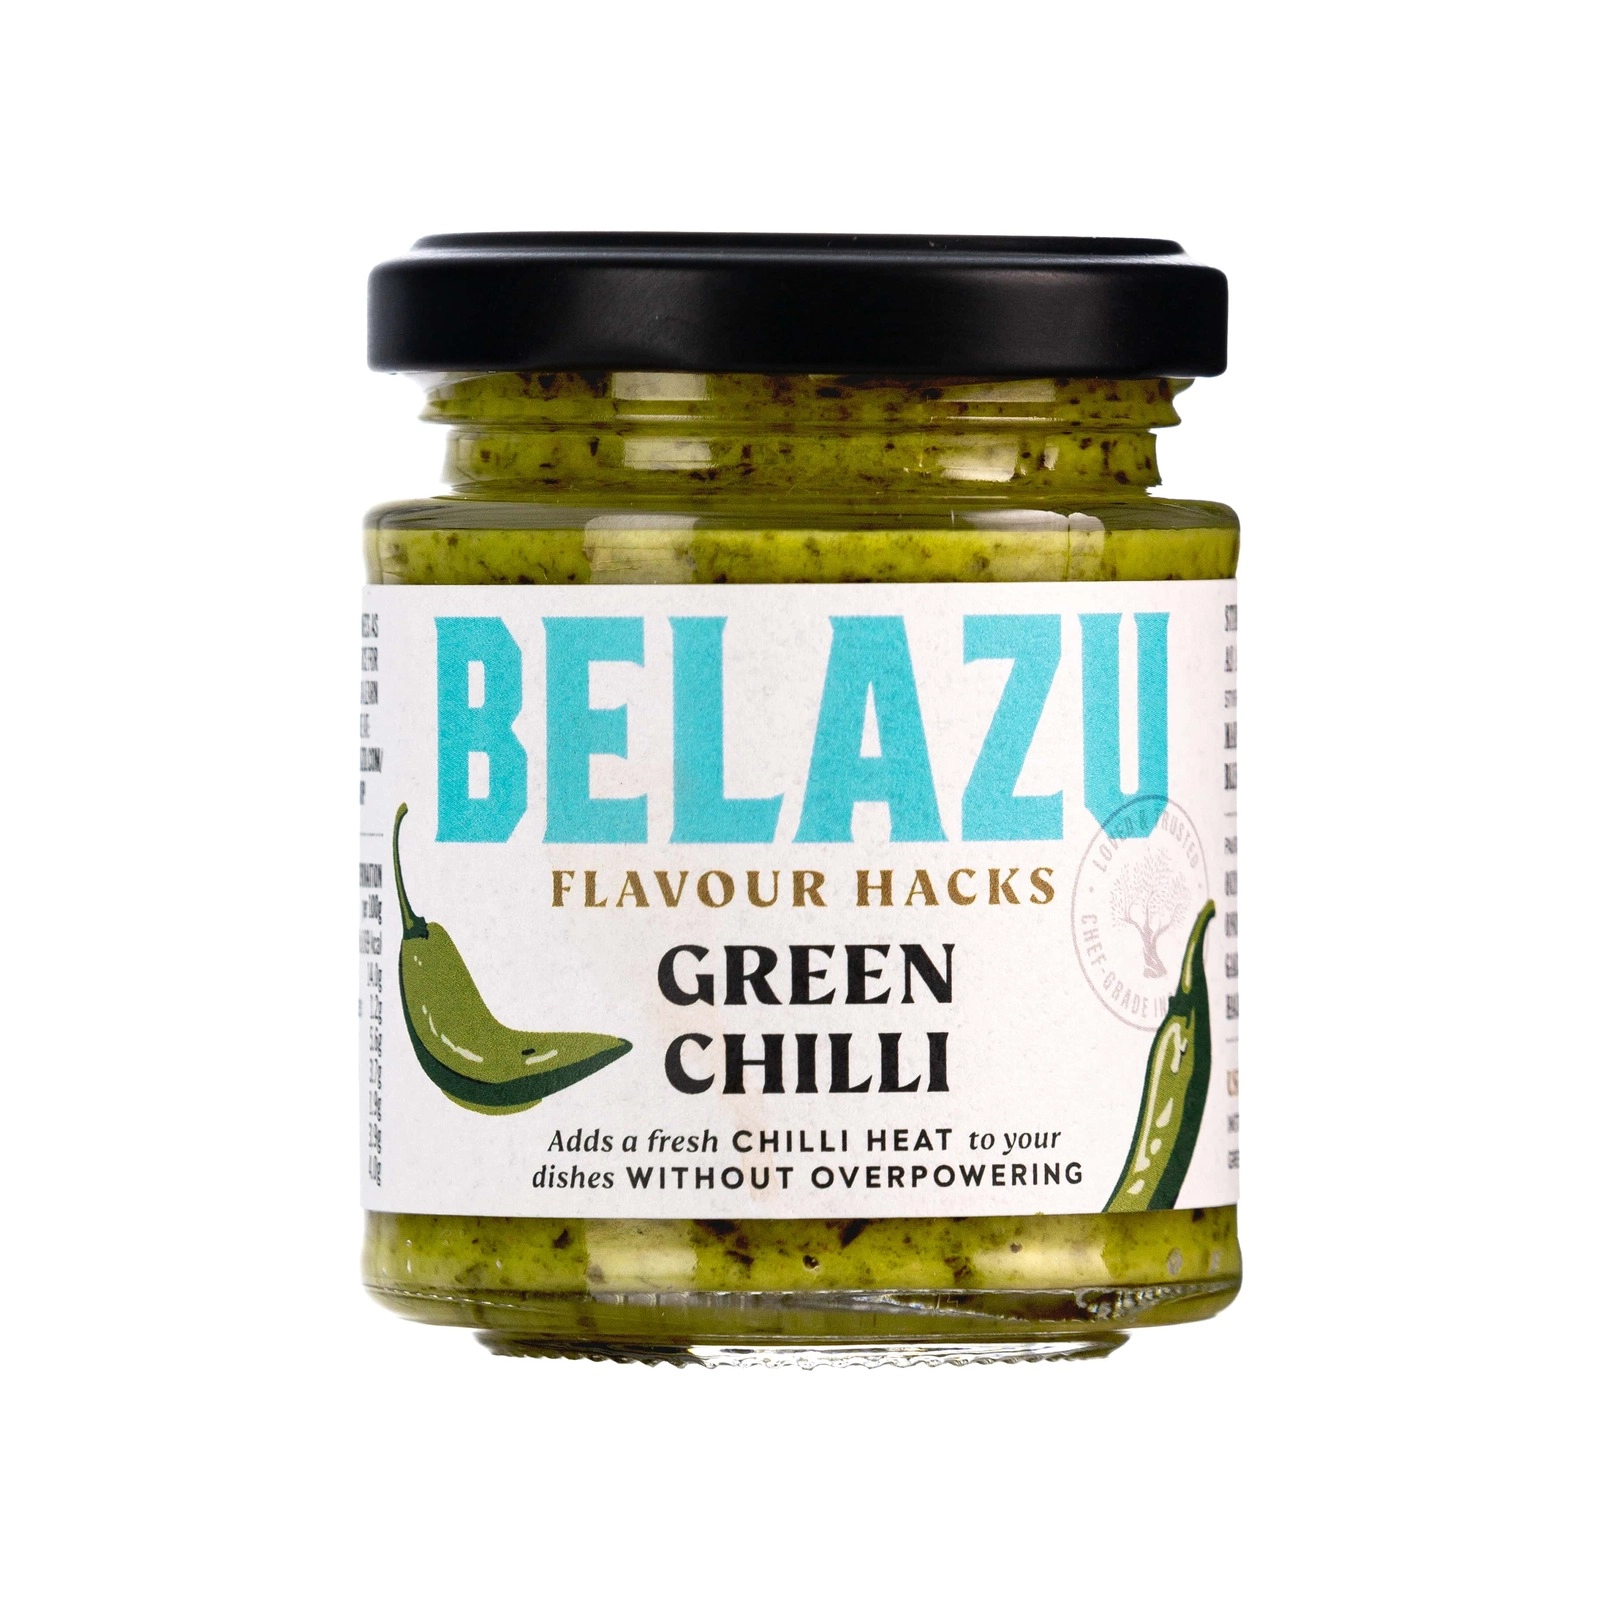 BELAZU Flavour Hack Green Chilli (130g)